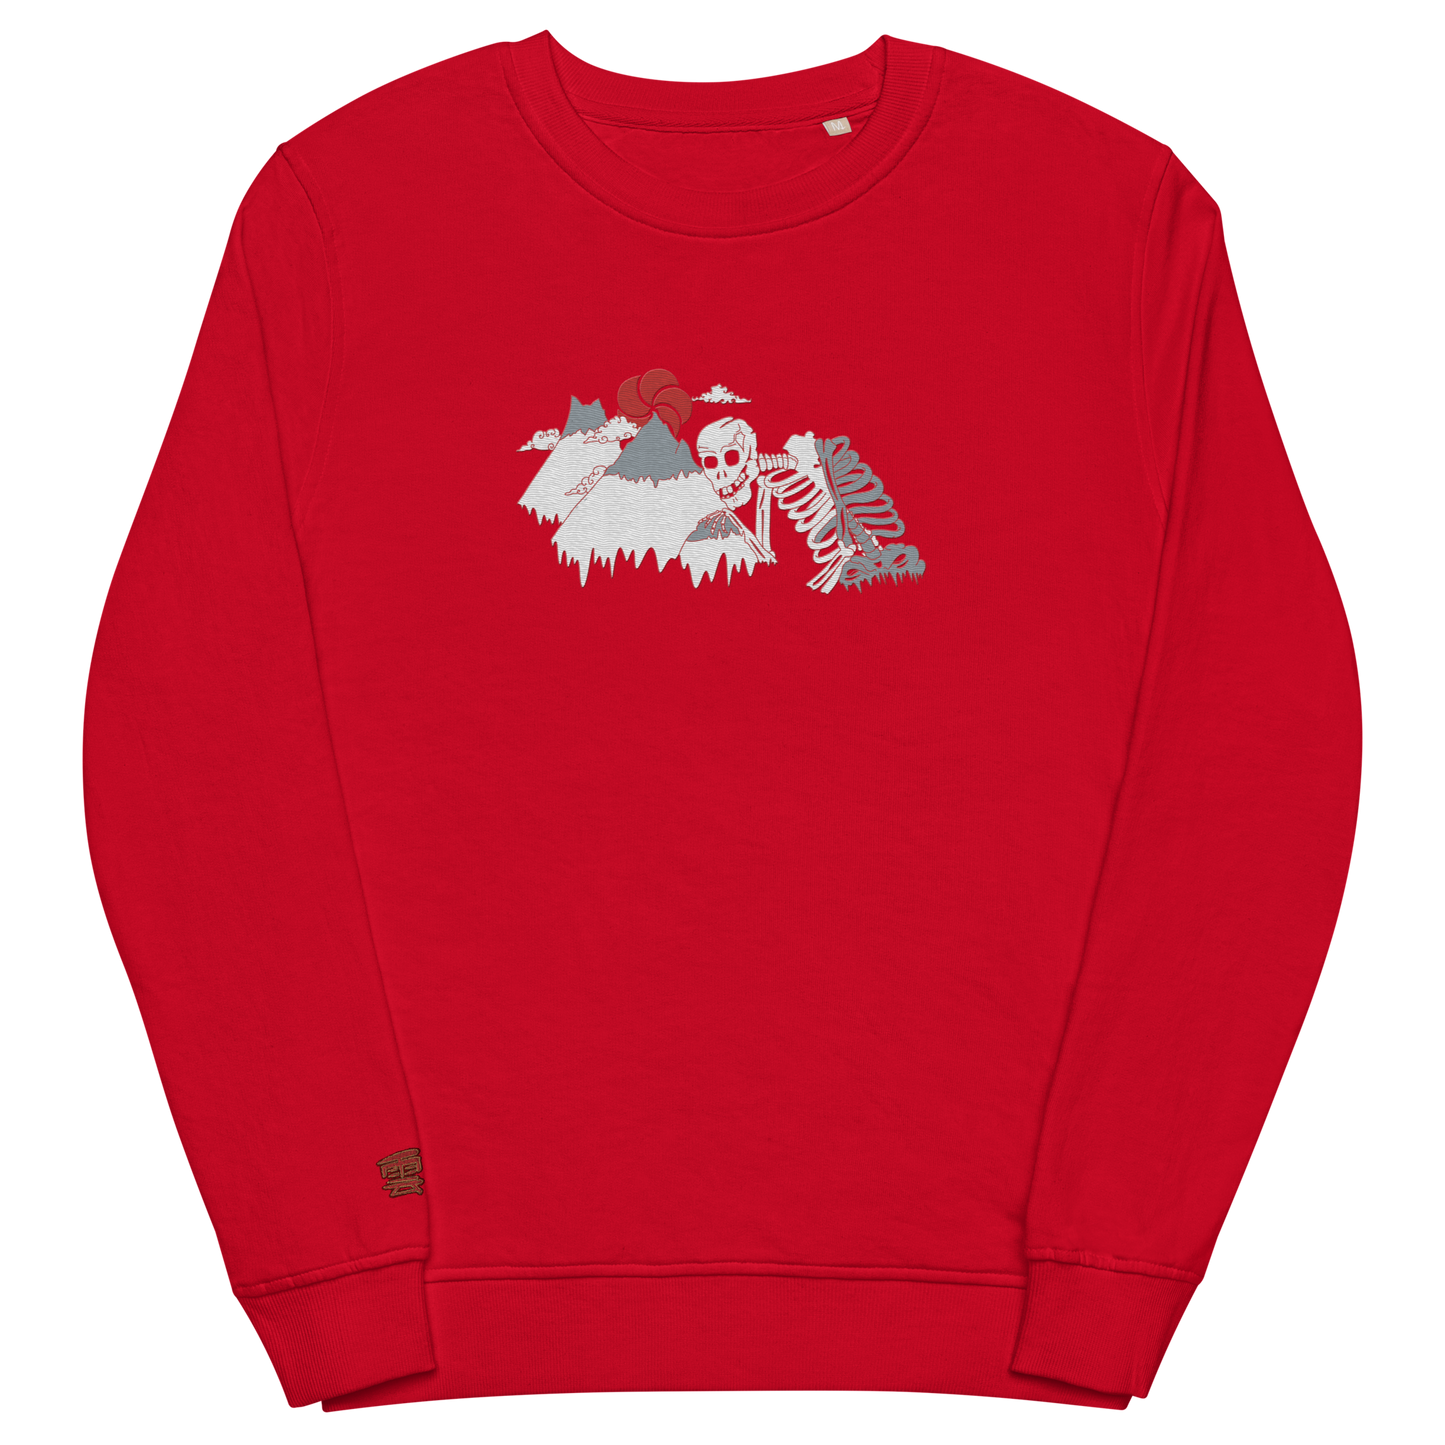 Old Glen Miln Embroidered Sweatshirt